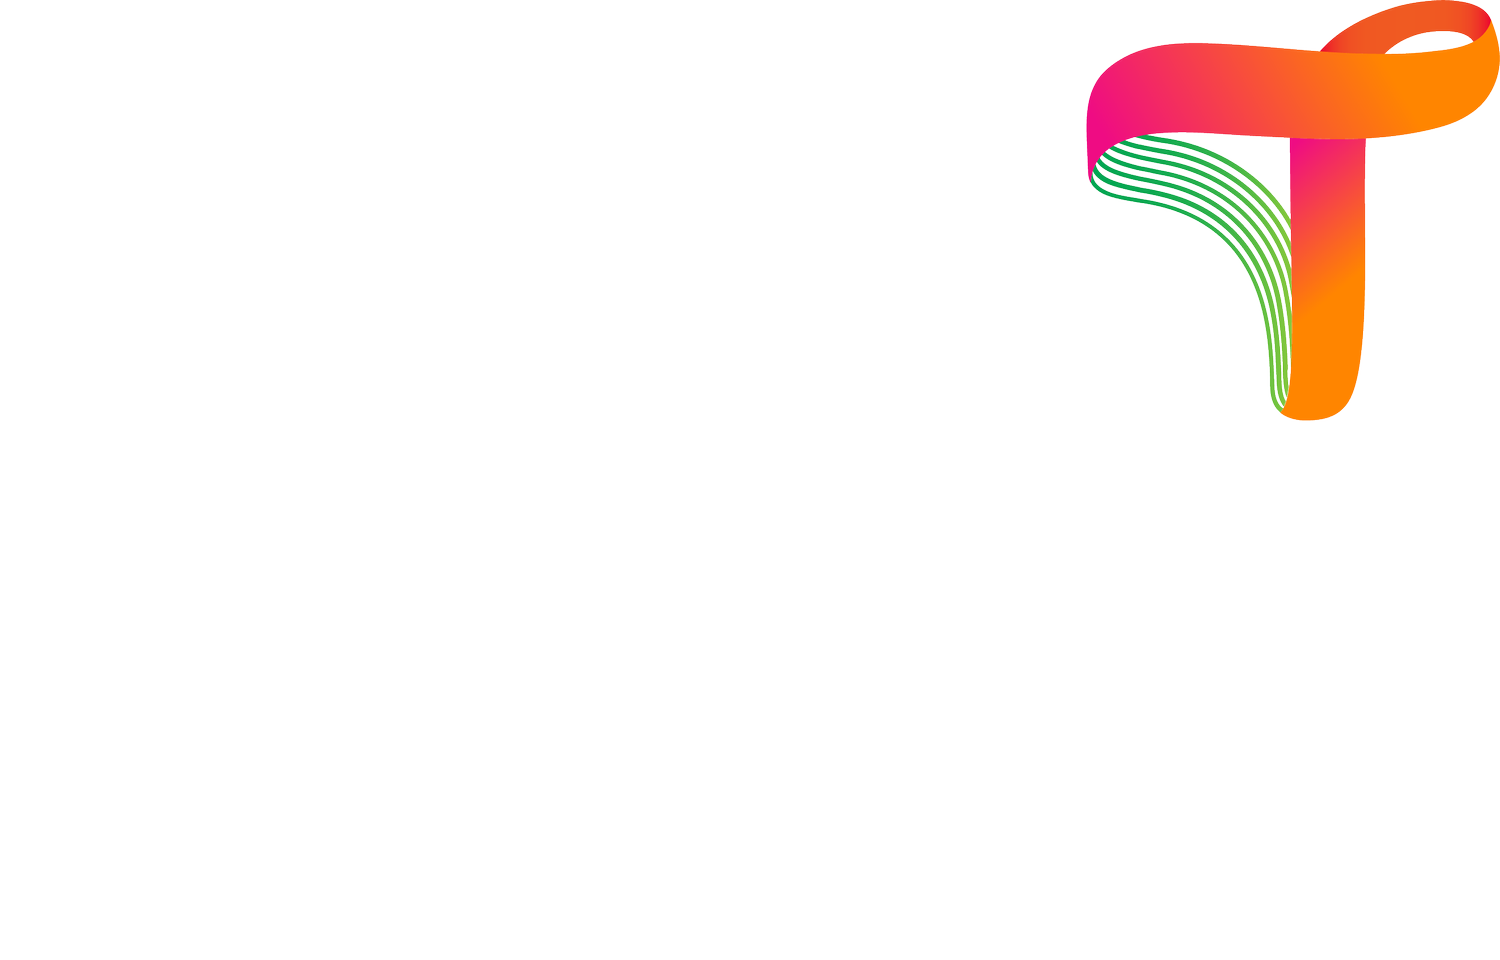 Twin Health